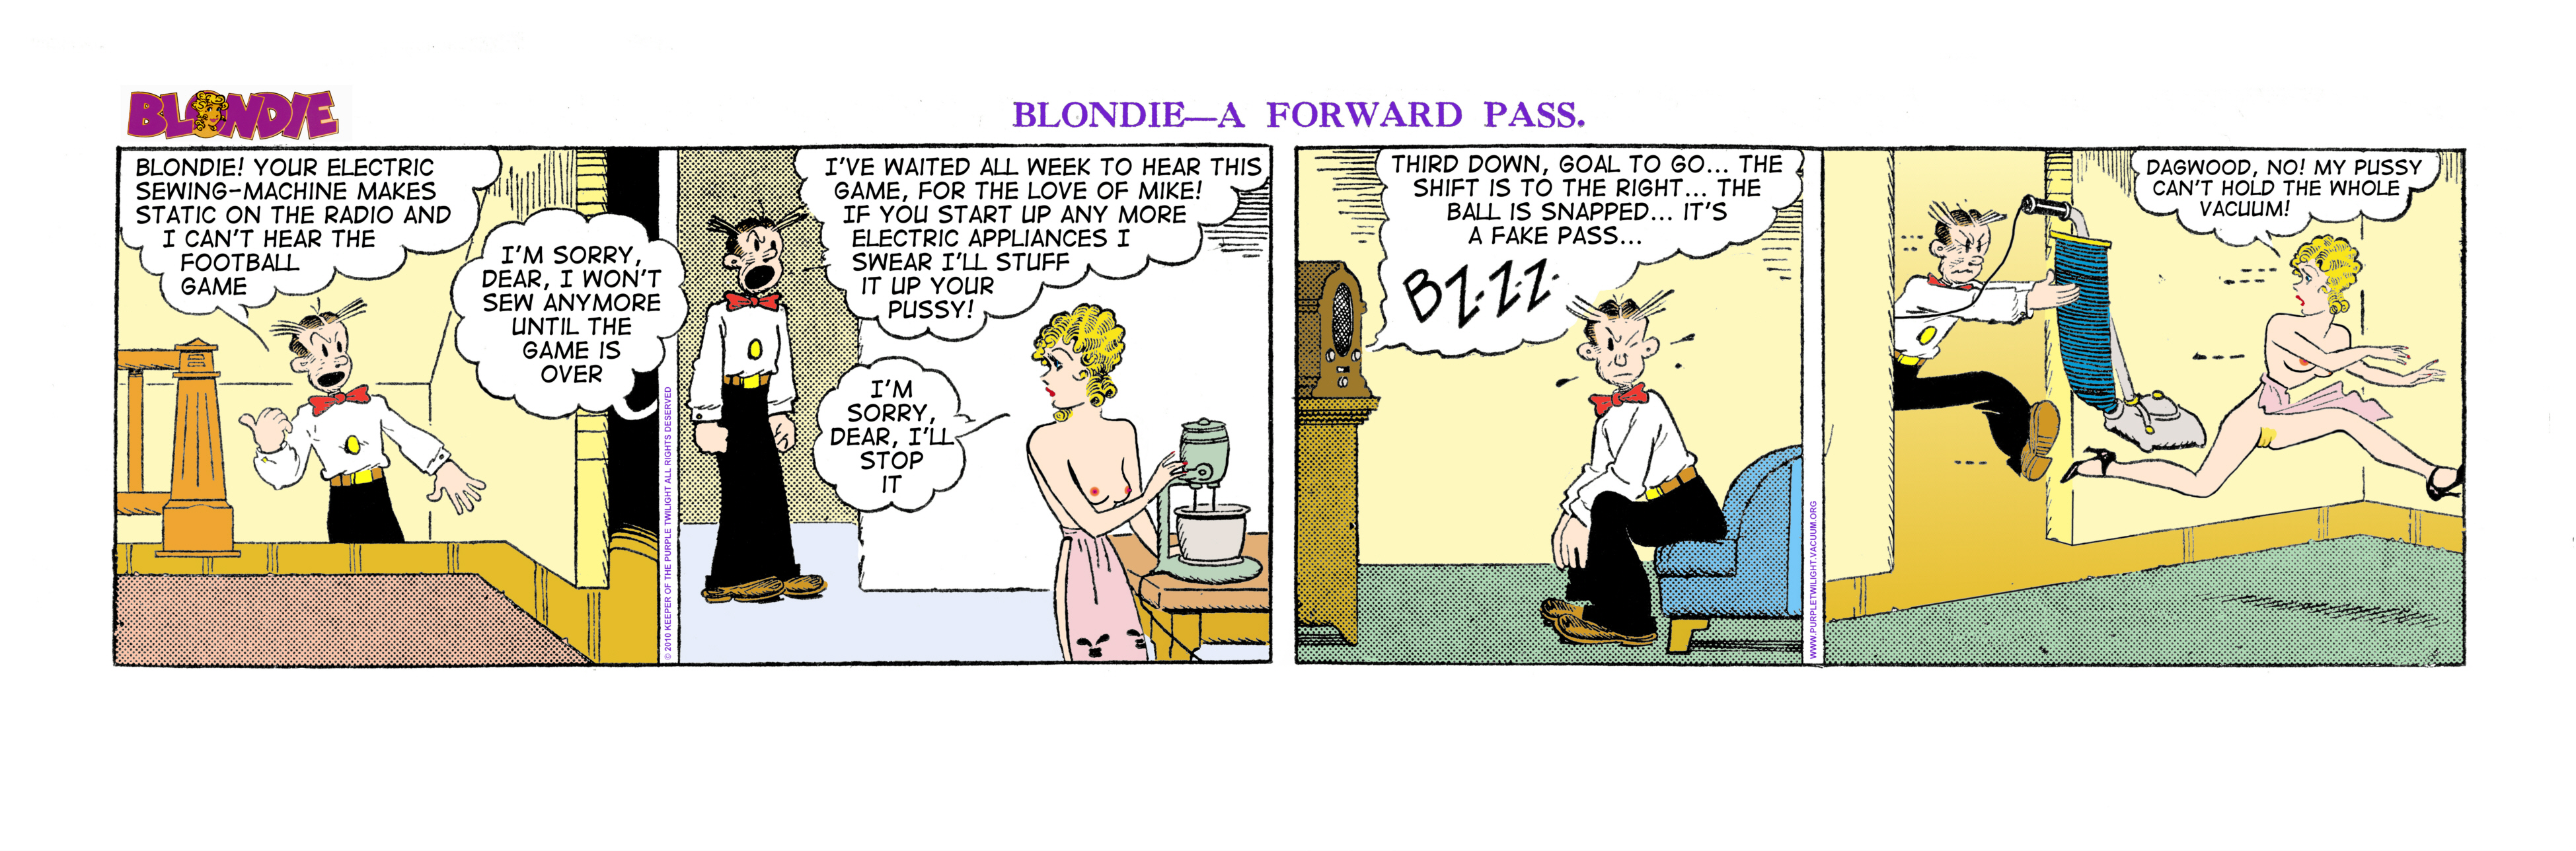 Adult Cartoons Blondie - Dagwood And Blondie Cartoon Porn And Blondie Dagwood Sex Cartoons -  XXXPicss.com